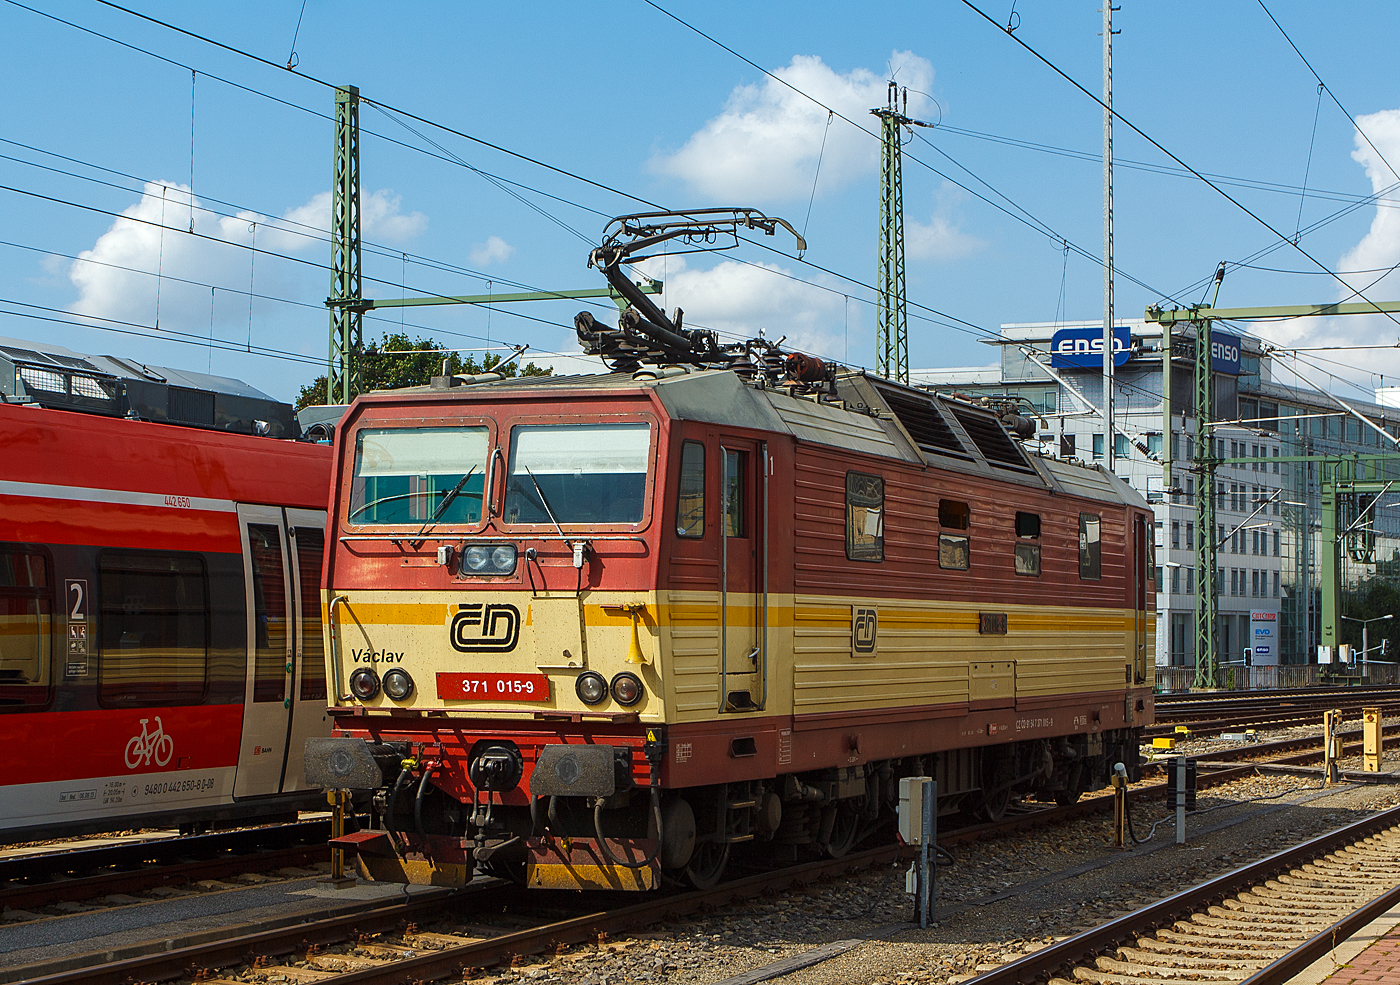 Die ČD 371 015-9  Václav  (Wenzel), ex ČD 372 015-8, ČSD 372 015-8 steht am 27.08.2013 beim Hbf Dresden. 

Die Lok (Škoda 76Em) wurde 1991 Škoda in Plzeň (Pilsen) unter der Fabriknummer 8782 für tschechoslowakischen Staatsbahn ČSD als 372 015-8 gebaut, der Wechselstromteil ist von LEW Hennigsdorf. Diese elektrische Zweisystemlokomotiven entstanden durch ein Gemeinschaftsprojekt der Tschechoslowakischen Staatsbahn ČSD und einstigen Deutschen Reichsbahn (DR), die deutschen Lok sind als Baureihen 180 (ex DR 230) eingereiht. In Deutschland tragen die Loks der BR 180 den  Spitznamen  Knödelpresse, oder wegen dem geringeren Wirkungsgrads auch den Spitznamen  Elbtalheizung . Auch das tschechische Pendant blieb nicht ohne Namen. Die Reihe 372 nennt man im Nachbarland  Bastard , diese 160 km/h schnellere Reihe 371  Turbobastard .

Bei dieser Lok erfolgte später, wie bei sechs Weiteren der Umbau von 120 km/h auf 160 km/h Höchstgeschwindigkeit und die Umzeichnung in ČD 371 015-9 (NVR-Nummer: CZ-ČD 91 54 7 371 015-9). Die Lokomotive 371.015 geriet am 29. Mai 2022 unweit des Bahnhofs Krippen in Brand und wurde beschädig.

Anfang der 1990er Jahre wurden die Lokomotiven der Baureihen 230 (DR) und 372 (ČSD) in Betrieb genommen. Mit ihnen begann der grenzüberschreitende elektrische Verkehr zwischen Děčín und Bad Schandau. Mit dem Ausbau der Strecke Dresden–Berlin für 160 km/h war die Baureihe 372 mit ihrer Höchstgeschwindigkeit von 120 km/h im hochwertigen Reisezugverkehr nicht mehr dort einsetzbar. Außerdem war auch der Ausbau der Bahnstrecke Praha–Děčín für 160 km/h geplant. Die Drehgestelle der Lokomotive waren lauftechnisch bis 200 km/h zugelassen, die Bremsausrüstung sowie die Getriebeübersetzung zwischen Fahrmotor und Treibradsatz waren jedoch nur für die zugelassene Geschwindigkeit 120 km/h ausgelegt.

Die Lokomotiven wurden zwischen 1996 und 2000 bei Škoda unter der Werksbezeichnung 76Em modernisiert. Insgesamt sechs Maschinen wurden zur Baureihe 371 umgebaut (Nummern 001, 002, 003, 004, 005 und 015), wobei die ursprünglichen Ordnungsnummern beibehalten wurden. Die Tests mit den umgebauten Lokomotiven verliefen aber nicht so, wie man sich es vorgestellt hatte: Bei den tschechischen Lokomotiven brachen wiederholt die Schleifstücke der Stromabnehmer, wodurch jedes Mal großer Schaden entstand, da der gebrochene Stromabnehmer die Fahrleitung herunterriss. Daraufhin wurden die Stromabnehmer der Lokomotiven auf einzeln gefederte Schleifstücke umgebaut.

TECHNISCHE DATEN:
Gebaute Loks: 15 der  ČSD BR 372 / 20 der DR BR 230 (DB 180)
Umgebaute Loks: 7 (zu BR 371)
Hestellertyp: Škoda 76E (nach Umbau 76Em) (für DR Škoda 80E)
Spurweite:  1.435 mm
Achsfolge:  Bo'Bo'
Länge über Puffer:  16.800 mm
Drehzapfen-Abstand: 8.360 mm
Achsabstand im Drehgestell: 3.200 mm
Eigengewicht:  84 t
Achslast:  21 t
Höchstgeschwindigkeit: 160 km/h
Anfahrzugkraft: 205 kN
Dauerzugkraft: 141,6 kN
Stundenleistung: 3.260 kW
Dauerleistung:  3.080 kW
Anzahl der Fahrmotoren: 4
Antrieb: Kardanantrieb in Hohlwelle
kleinster befahrbarer  Radius: 120 m  

Einsatz:
Die Lokomotiven verkehrten vor den EuroCity-Zügen zwischen Praha hlavní nádraží und Dresden Hbf. Mit dem Zugpaar EC 258/259 kamen die Lokomotiven auch bis Leipzig Hbf. Bereits zum Dezember 2015 sollten Lokomotiven der ČD-Baureihe 380 diese Züge zwischen Prag, Berlin und Hamburg durchgehend bespannen. Das für die deutschen Schienenwege zuständige Eisenbahninfrastrukturunternehmen DB Netz verweigerte allerdings zunächst eine uneingeschränkte Zulassung. Für die durchgehende Traktion der Eurocityzüge von Prag nach Hamburg werden deshalb seit Dezember 2017 Dreisystemlokomotiven des Typs Siemens Vectron eingesetzt. Die Lokomotiven der Reihe 371 bespannen seitdem nationale Züge auf der Strecke Prag – Staré Město u Uherského Hradiště. In der Sommerzeit und im Advent wird der Regionalzug der Linie RE20 zwischen Ústí nad Labem und Dresden weiterhin mit einer Lokomotive der Reihe 371 bespannt.
